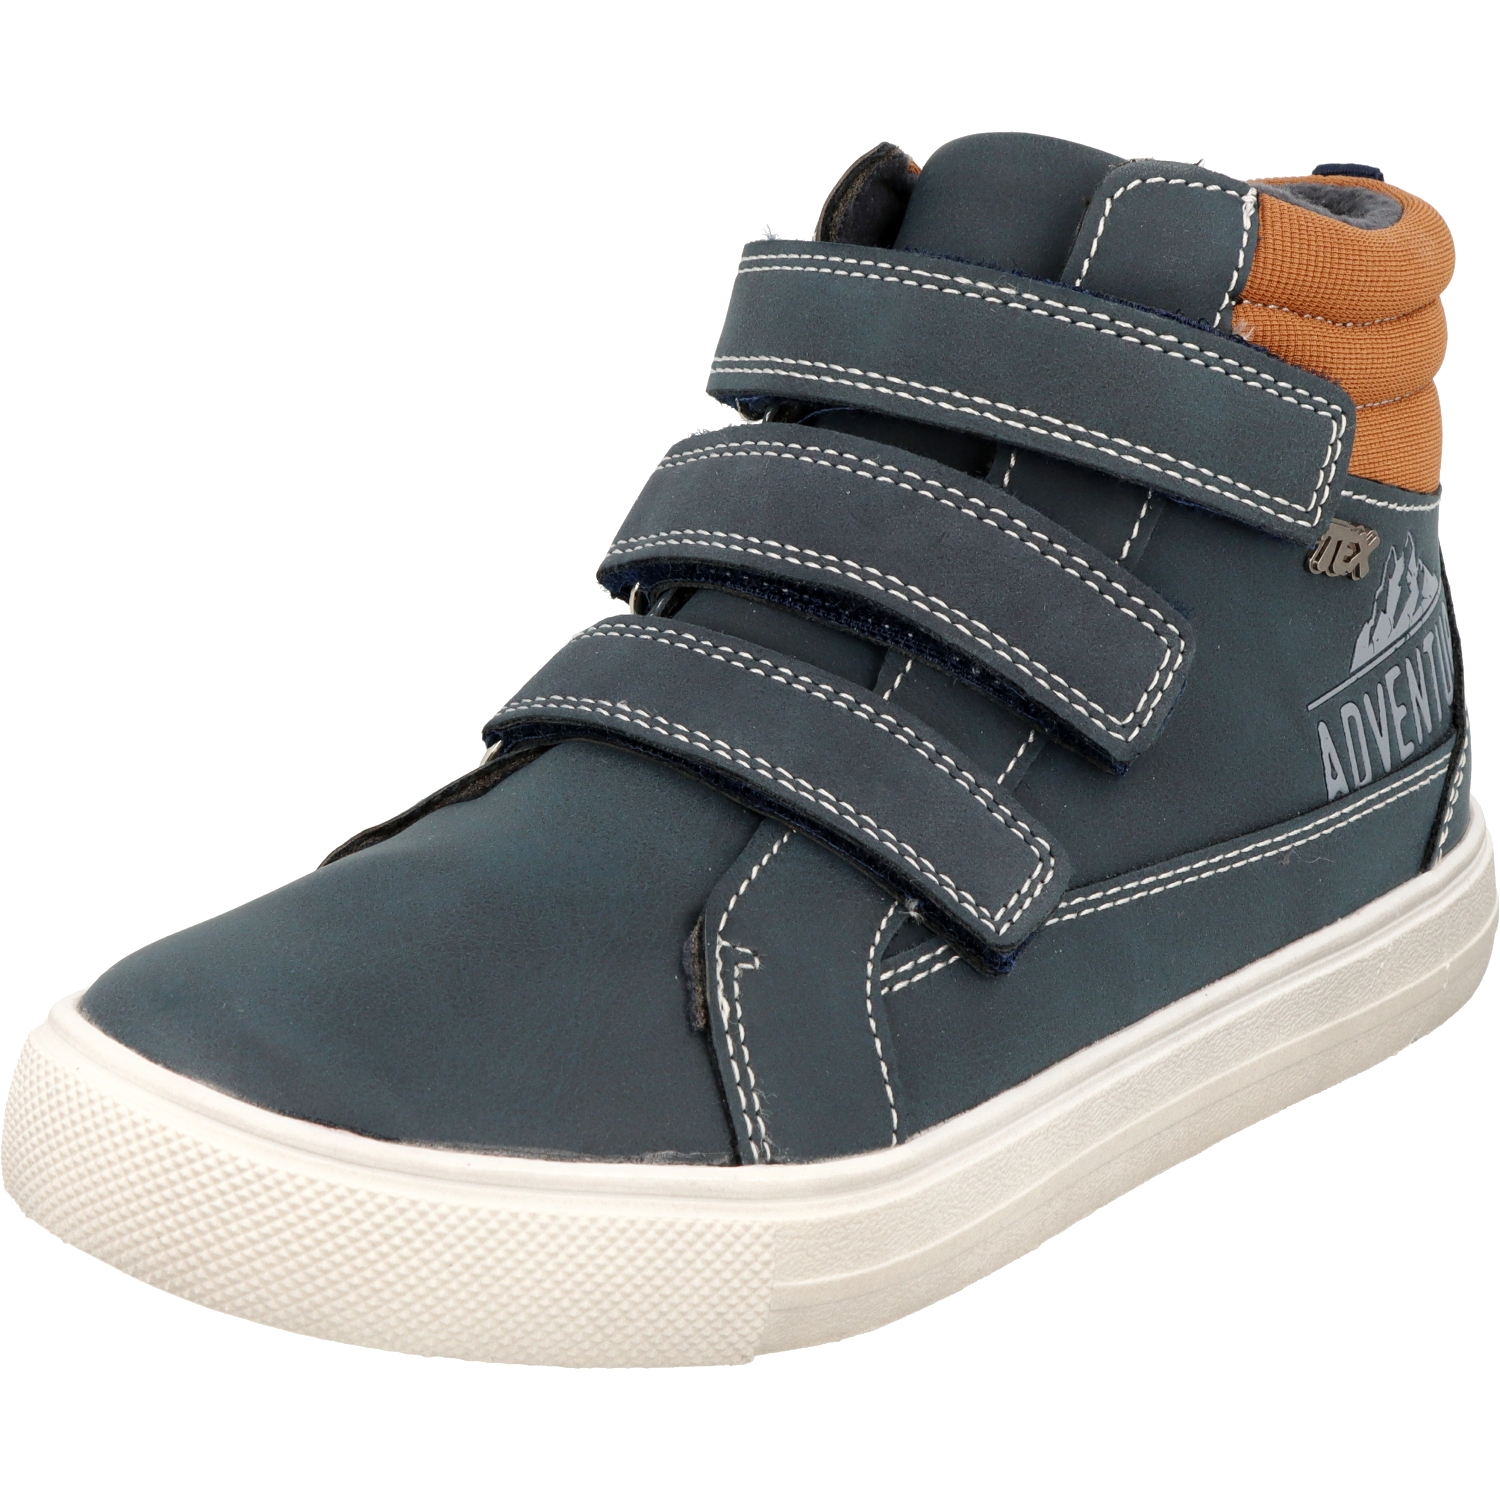 Indigo Jungen Schuhe 453-028 stylische HiTop Sneaker Blau 3-fach Klettverschluss